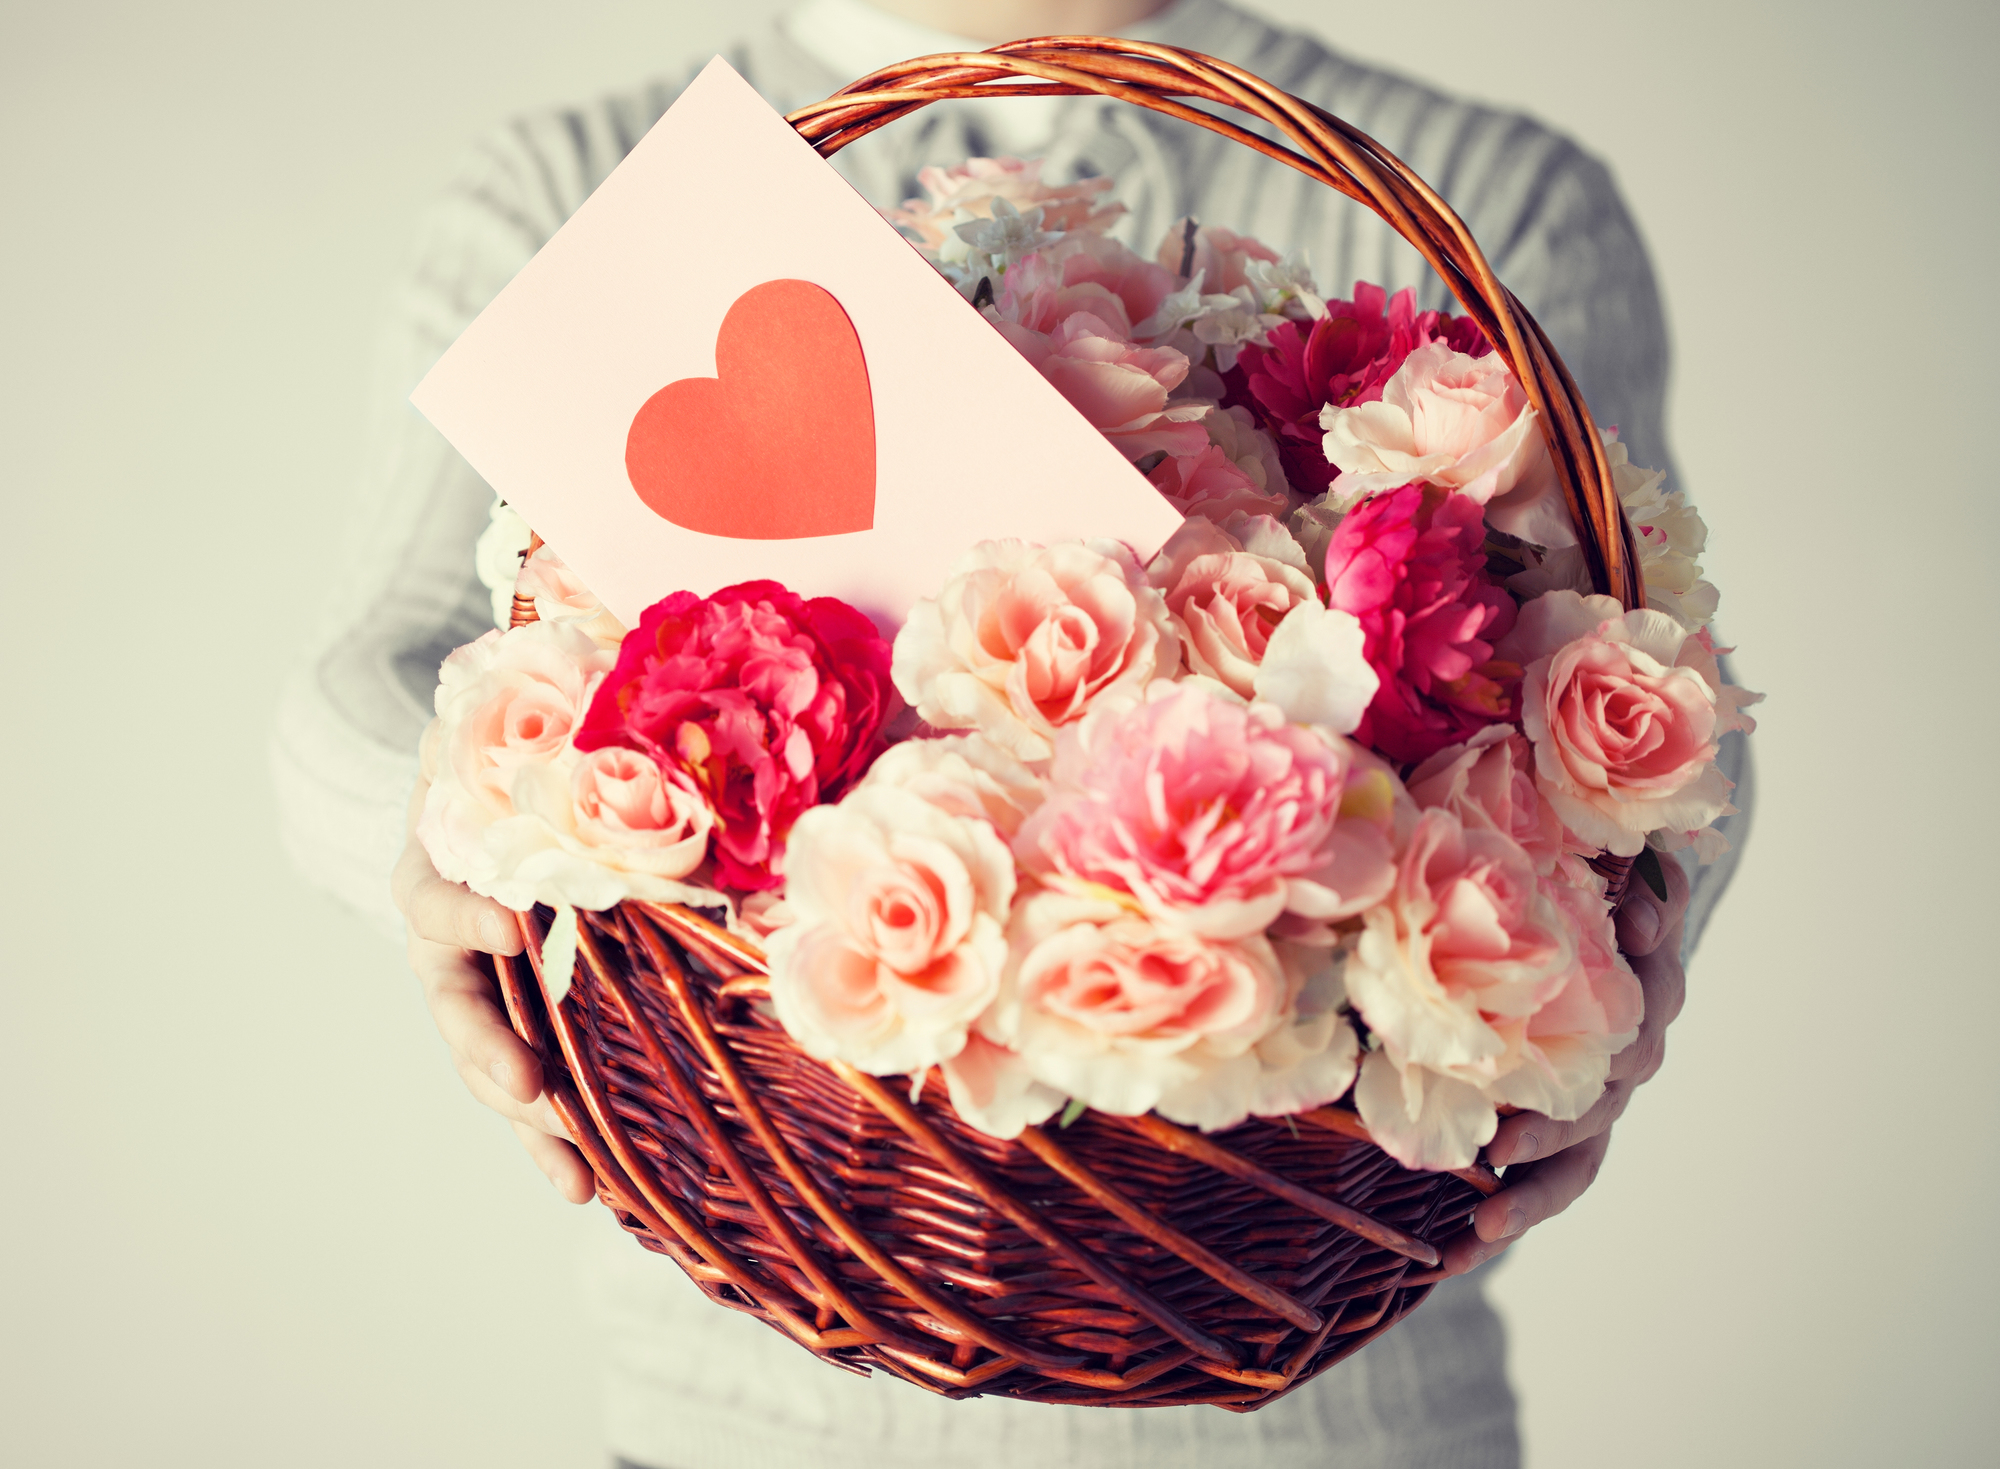 プロポーズに贈るのにおすすめな花束と花言葉を紹介 プロポーズ準備室 最高のプロポーズを知って相談できるサイト